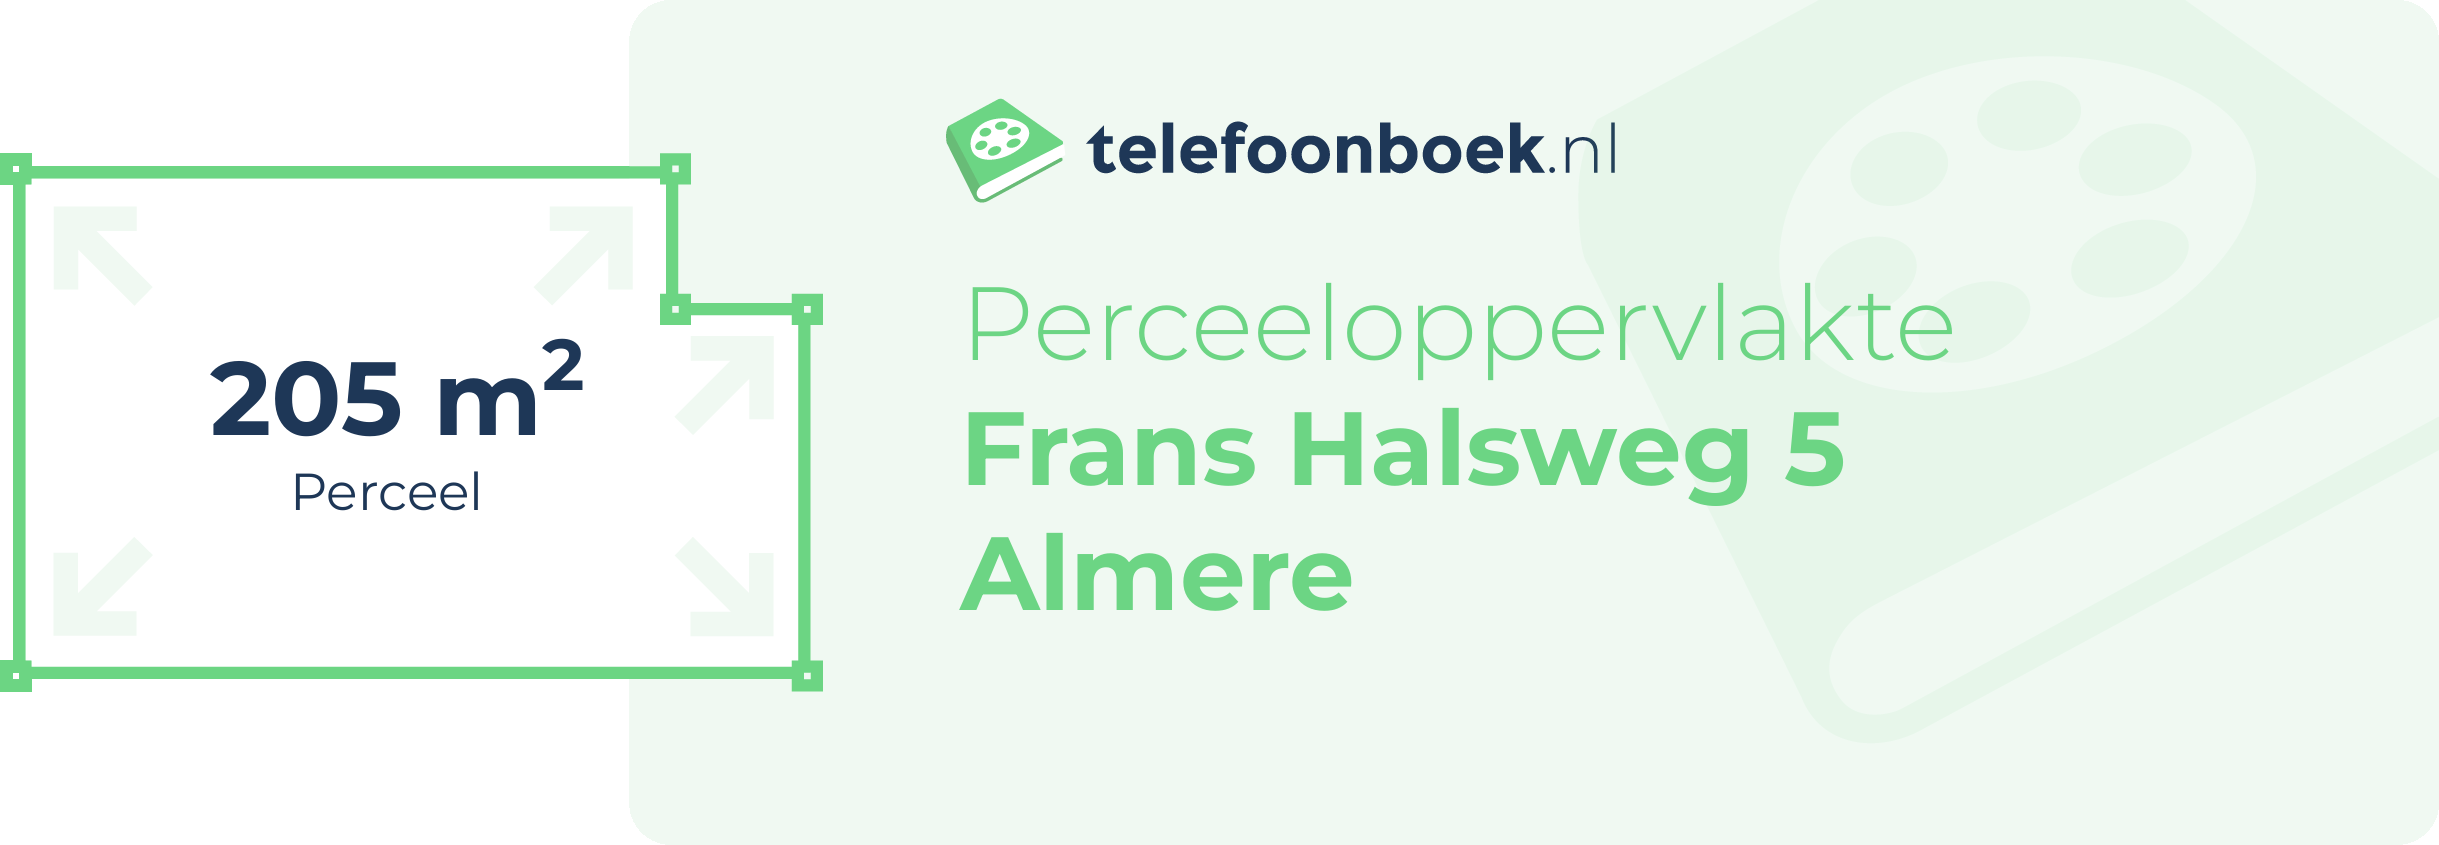 Perceeloppervlakte Frans Halsweg 5 Almere